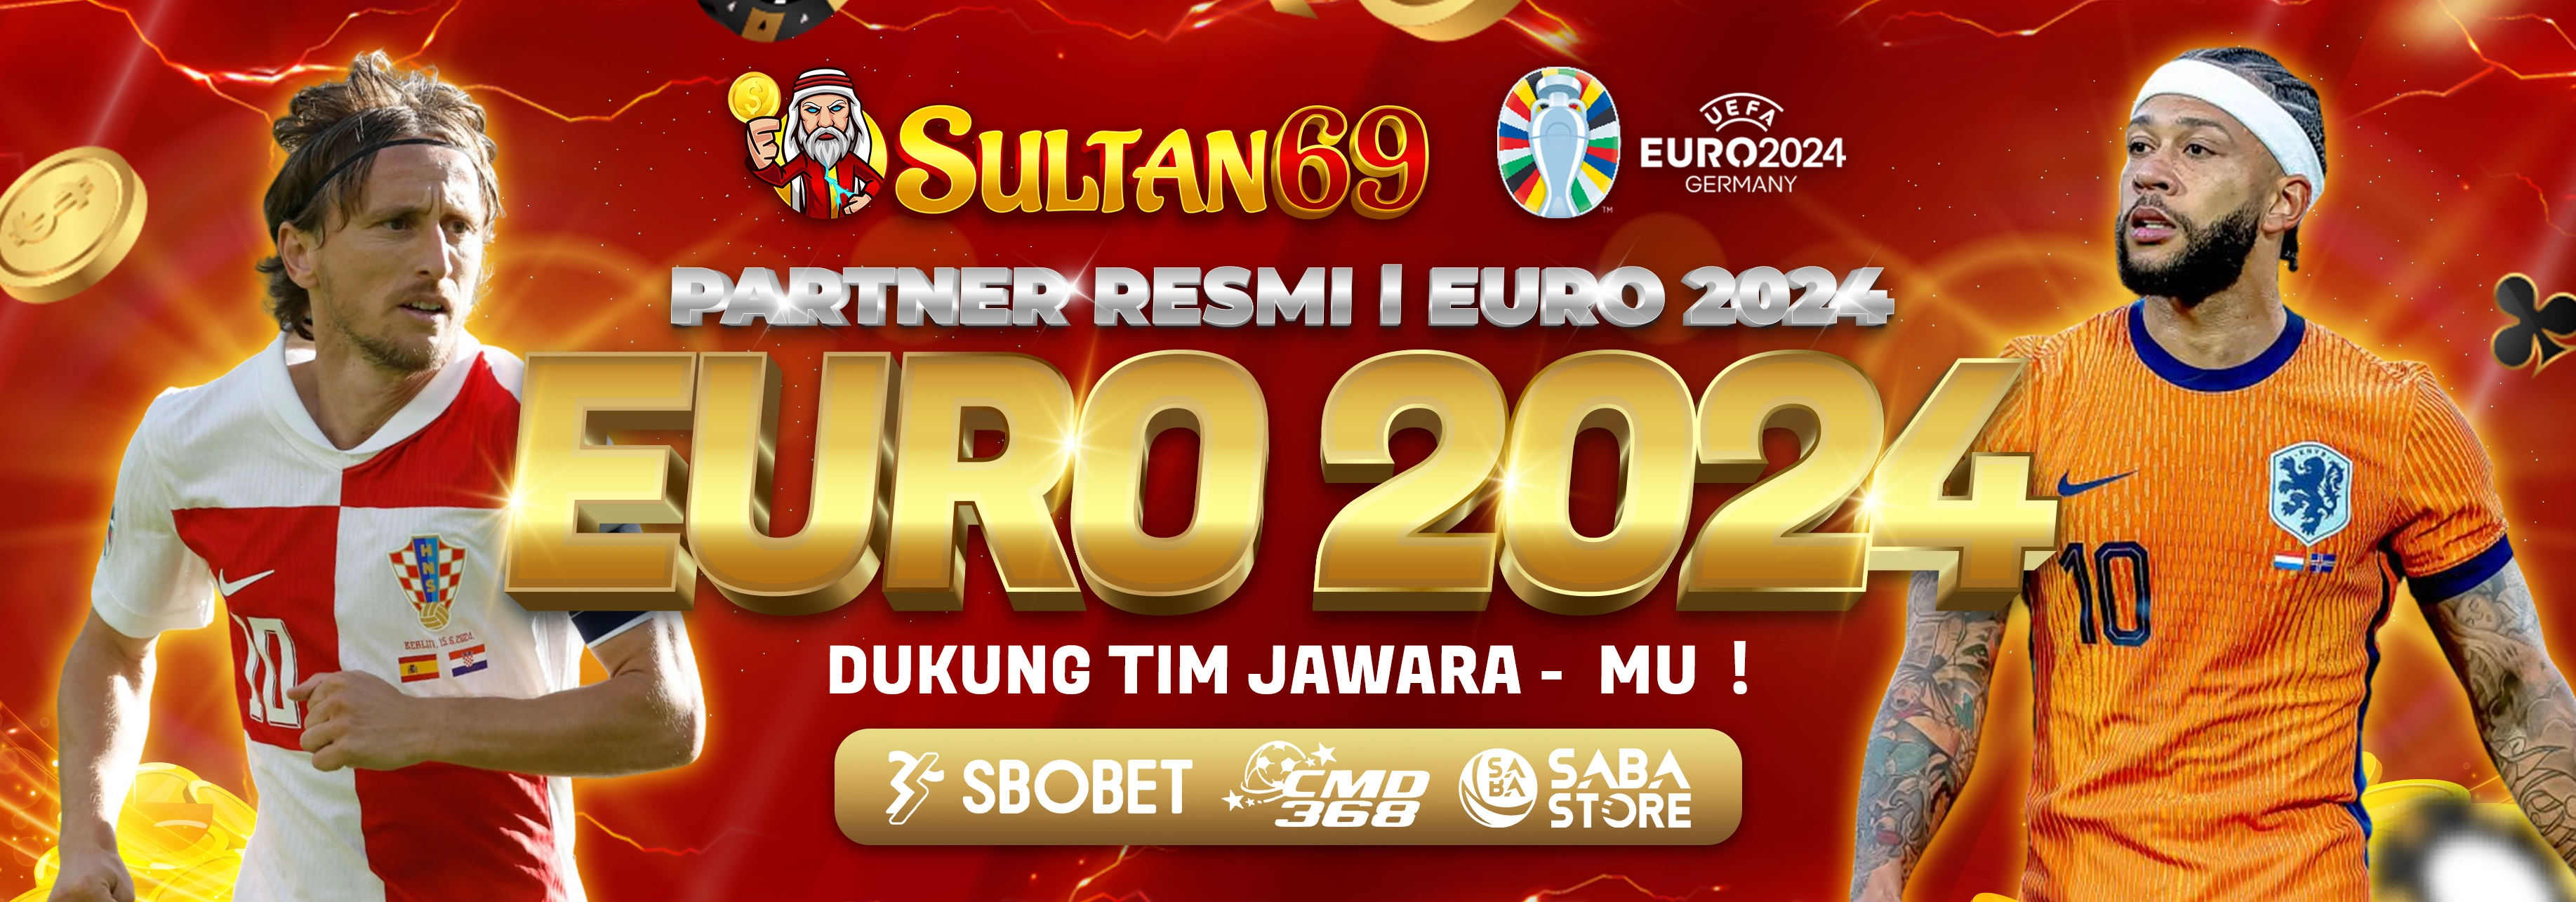 SULTAN69 PARTNER EURO 2024